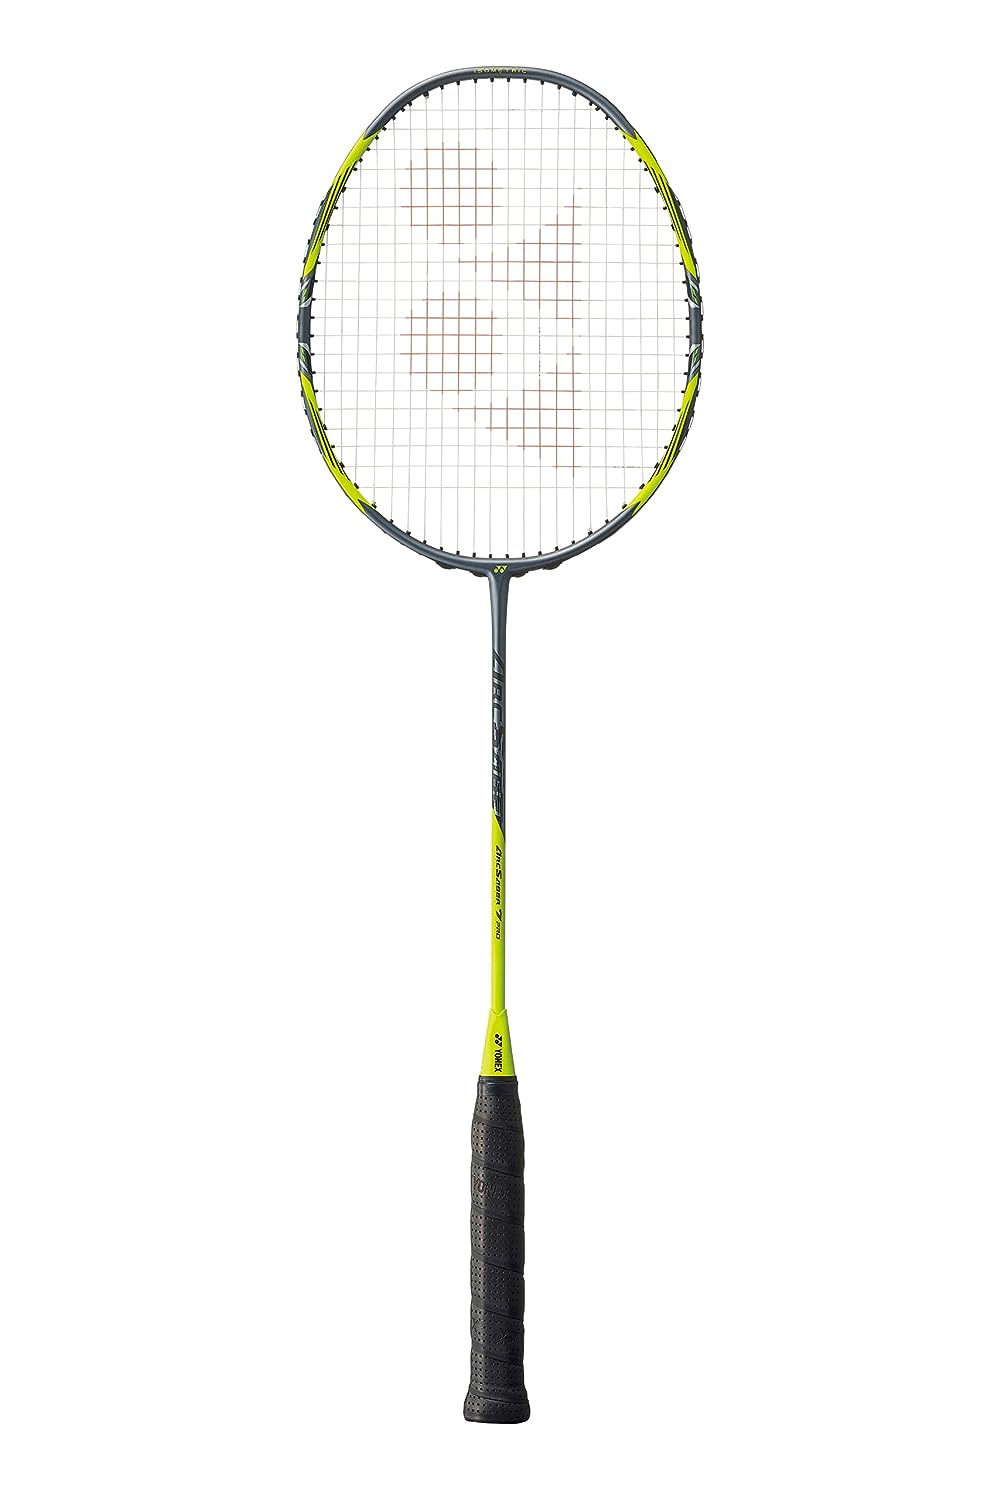 Yonex ArcSaber 7 Play (Gray/Yellow) Badminton Racket